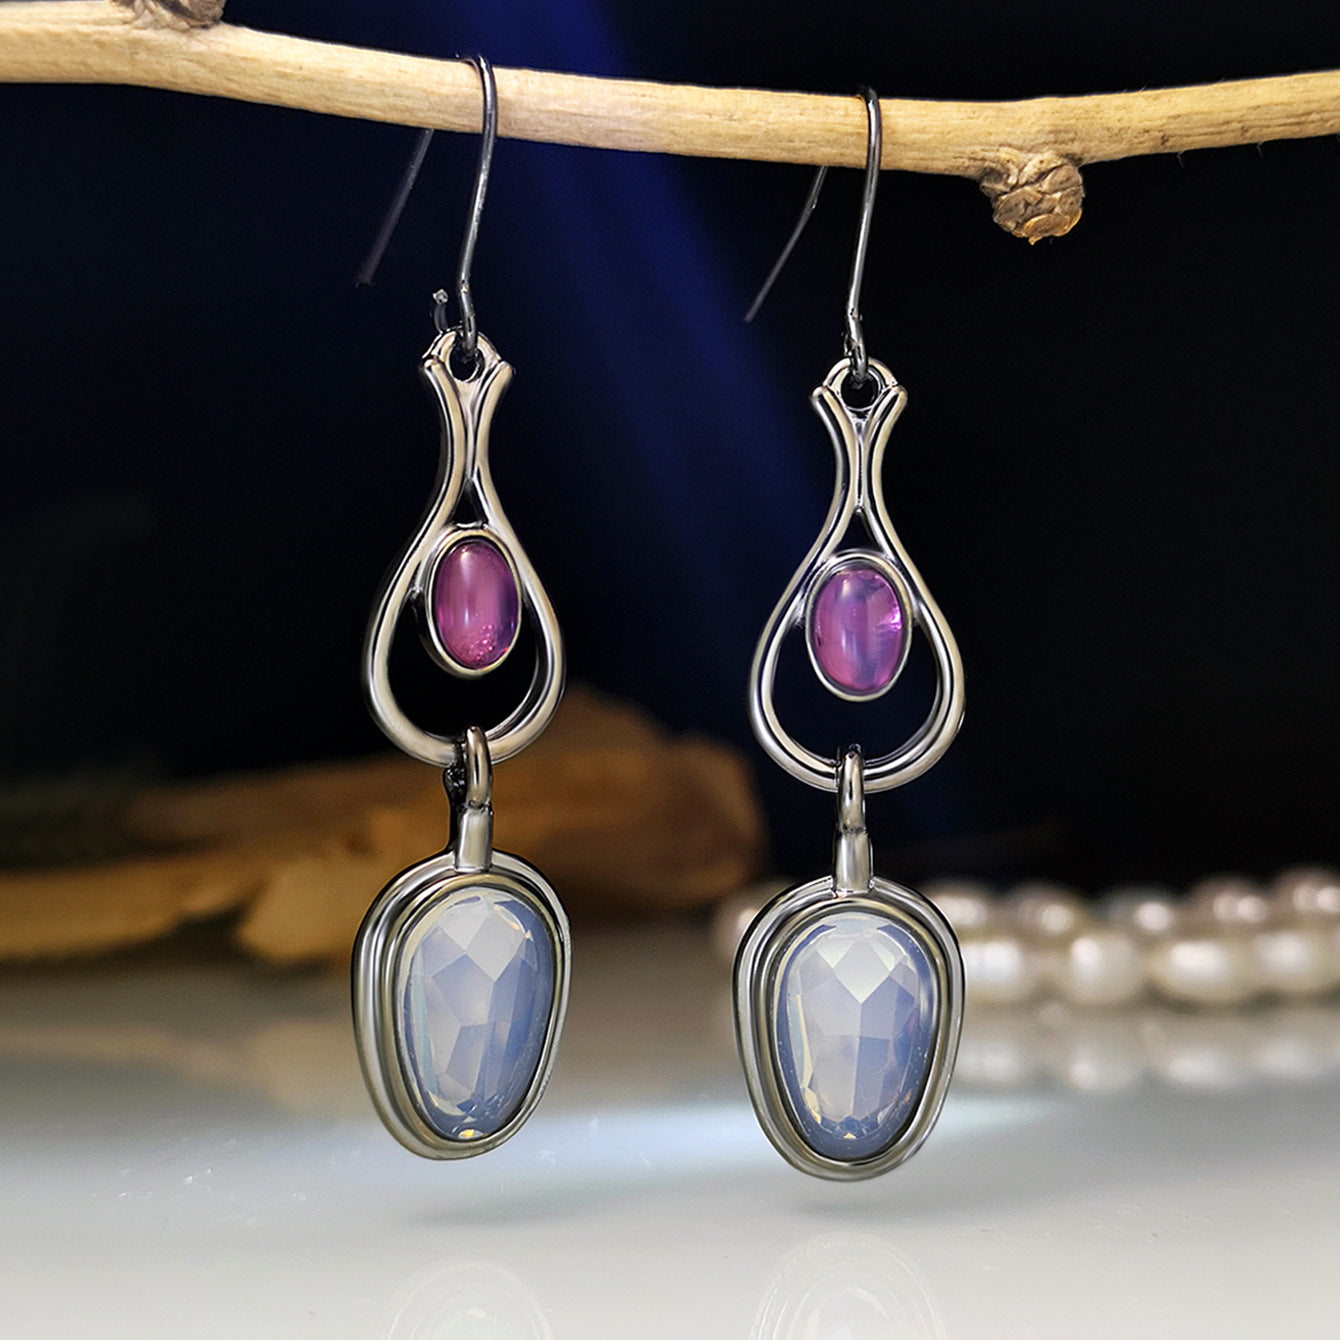 Earrings with amethyst cut opal-canovaniajewelry